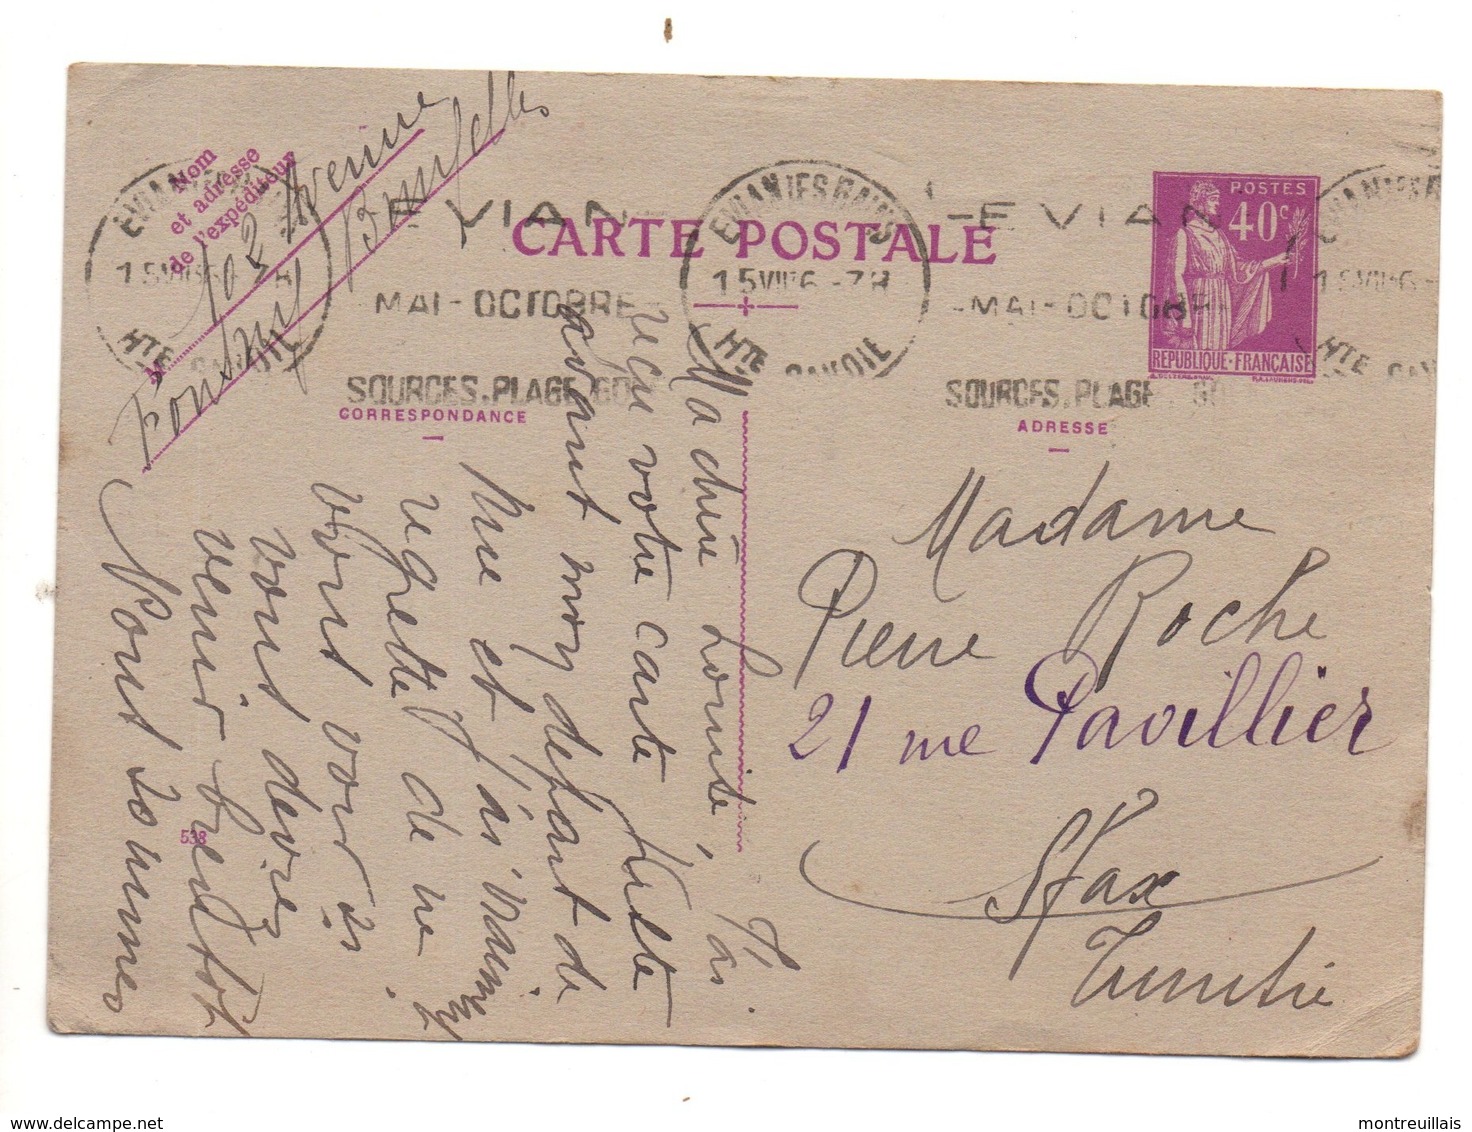 Carte Postale Sans Visuel De La Poste, Affranchissement EVIAN, Timbre Violet 40 Centimes, R.F., Entier Postal, - Tarjetas Cartas